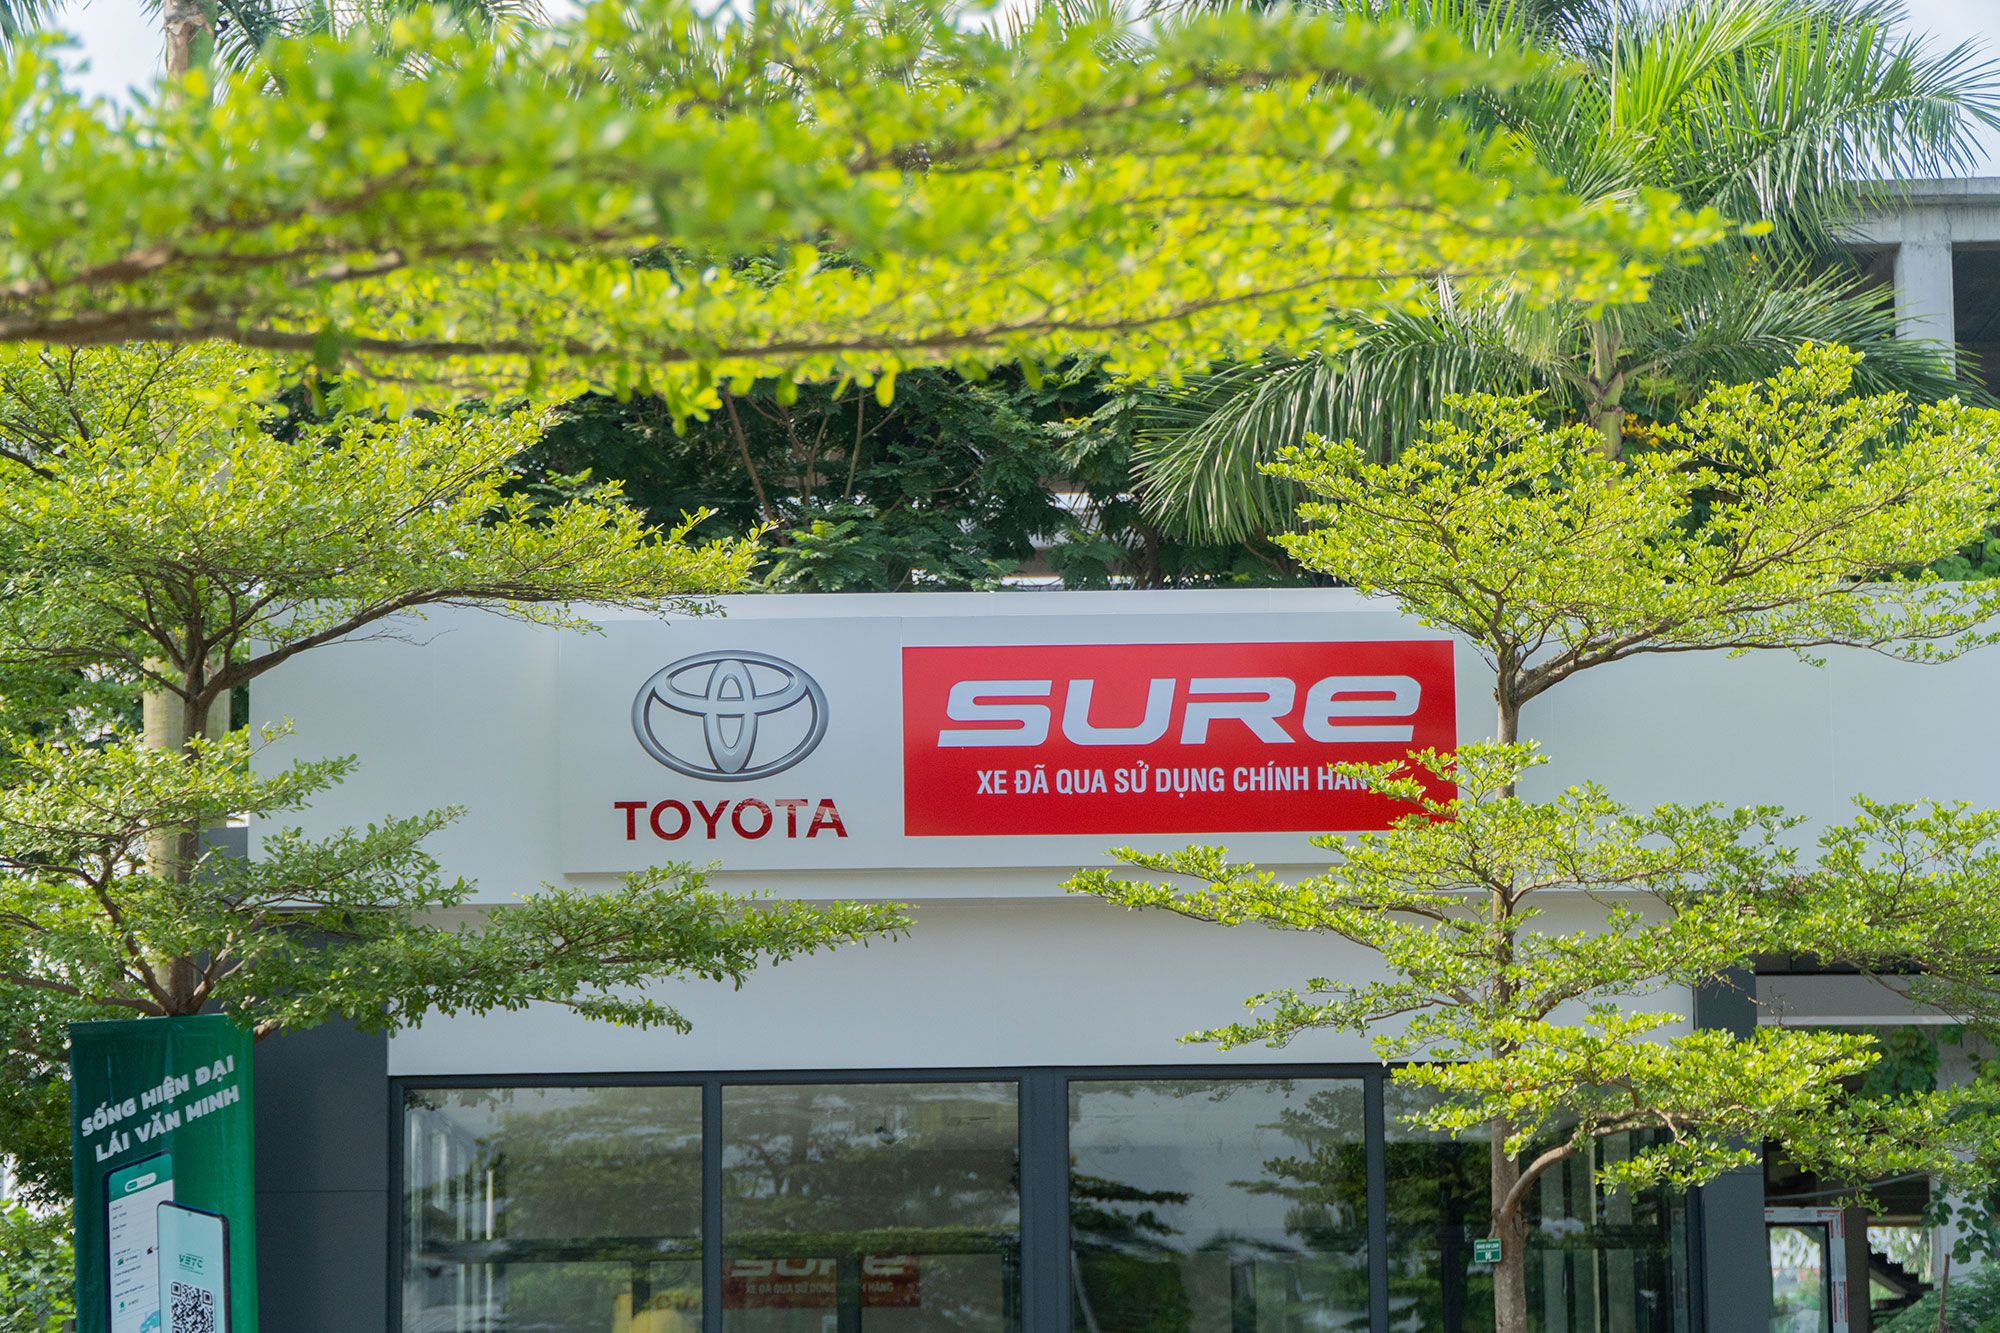 Toyota Sure Long Biên - Địa Điểm Mua Bán Xe Đã Qua Sử Dụng Chính Hãng Uy Tín